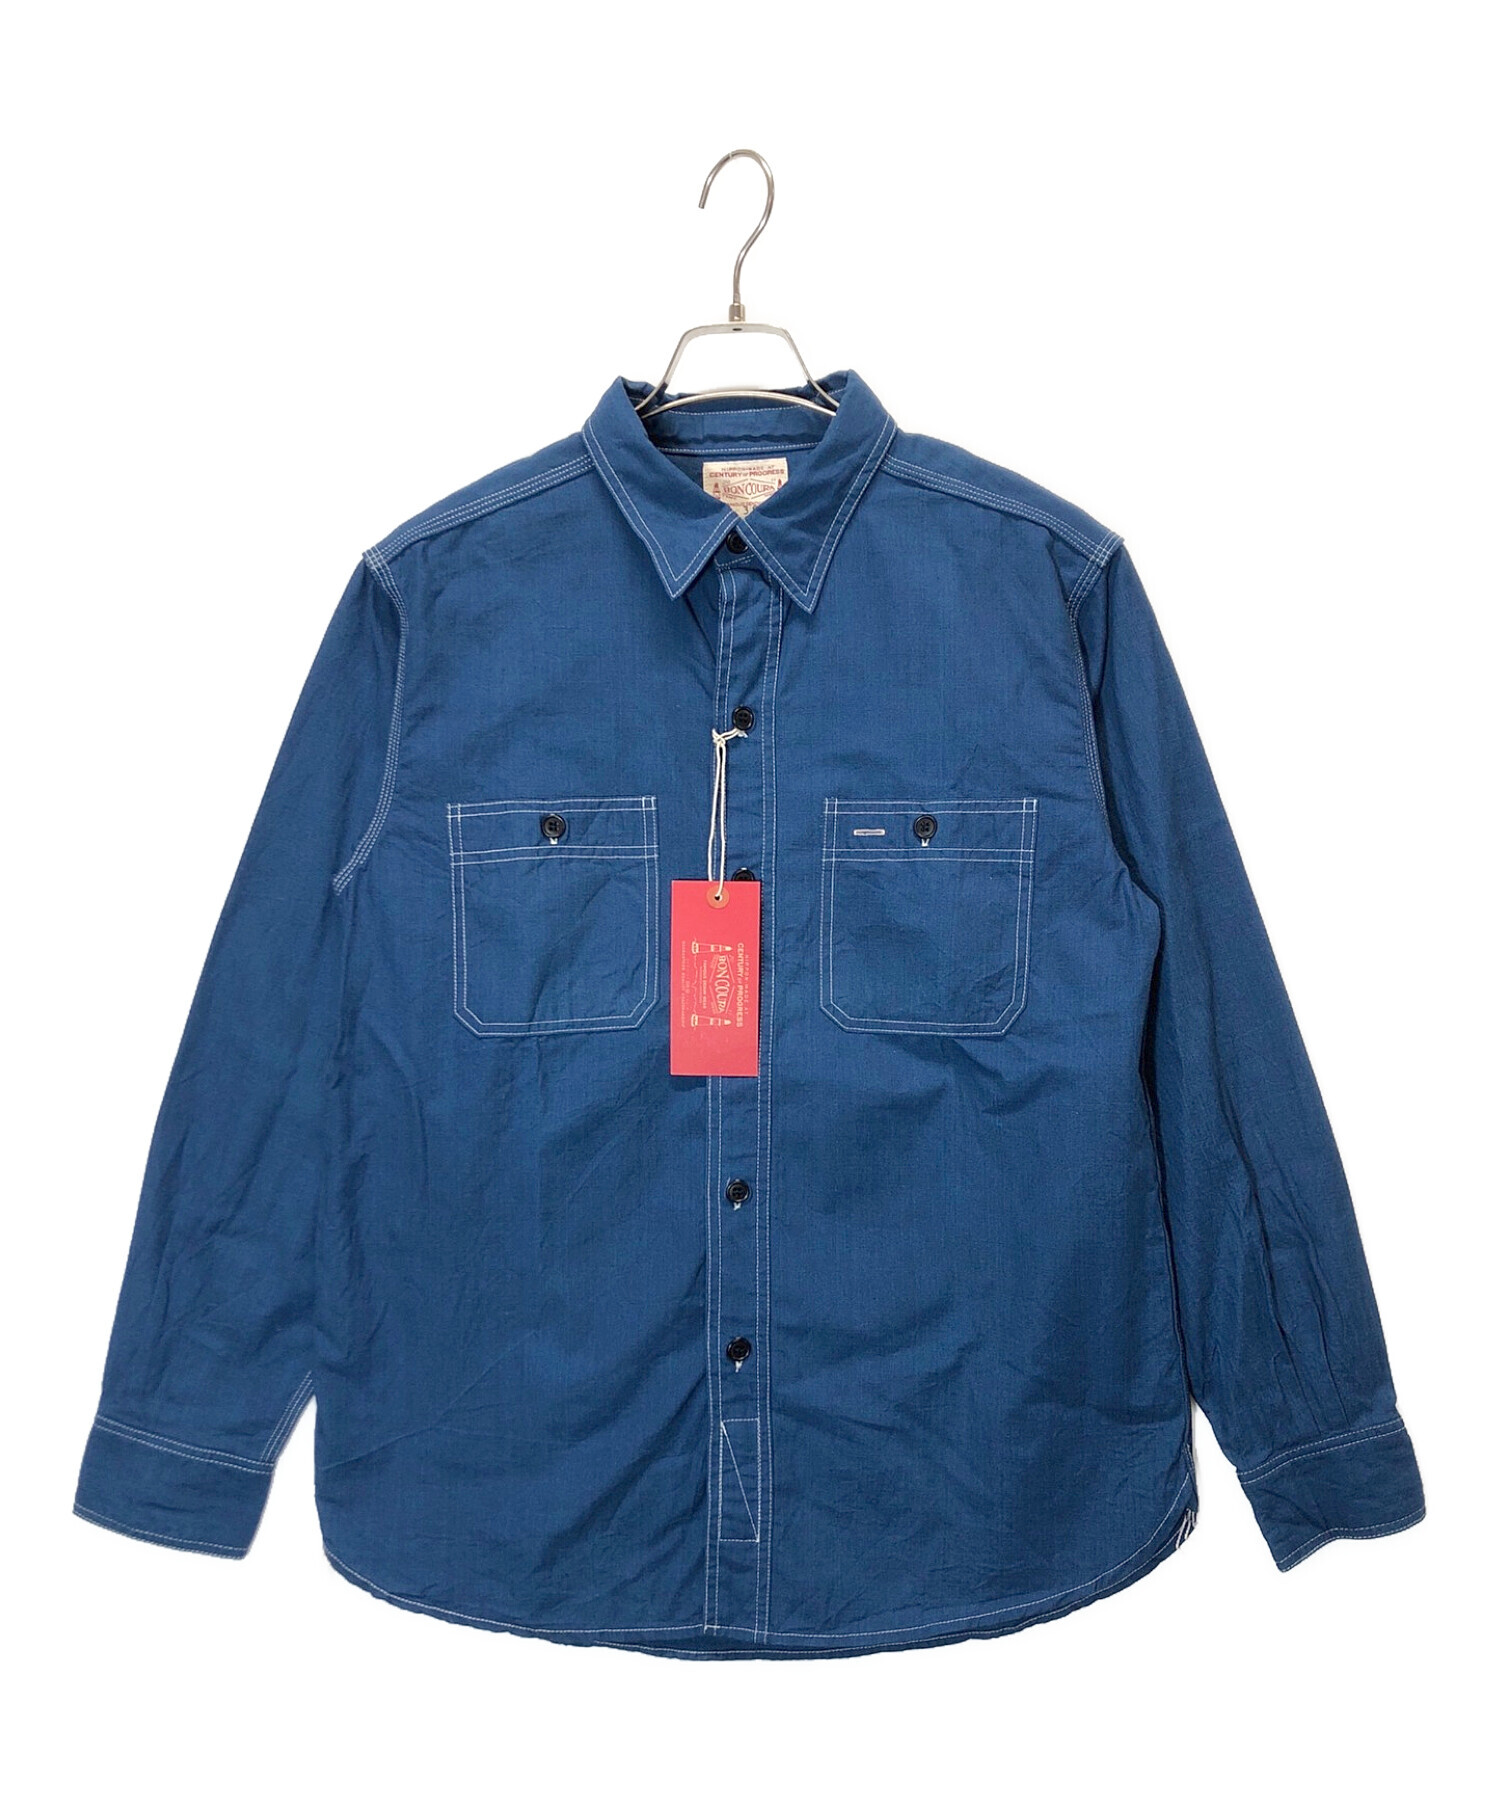 BONCOURA (ボンクラ) USNワークシャツ ブルー サイズ:SIZE38